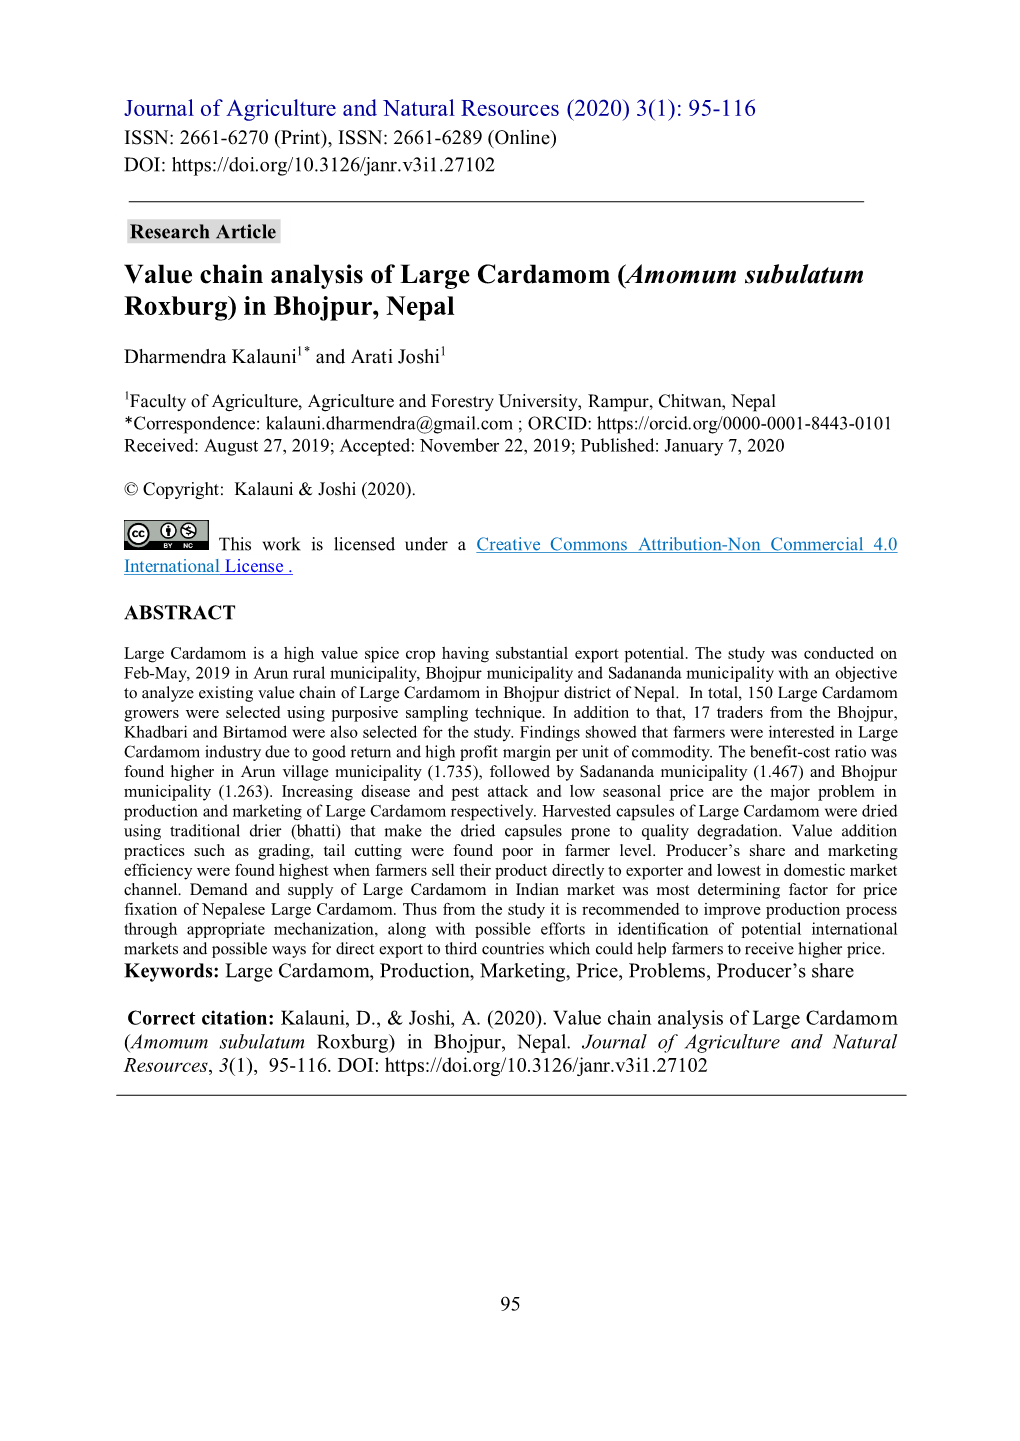 Value Chain Analysis of Large Cardamom (Amomum Subulatum Roxburg) in Bhojpur, Nepal